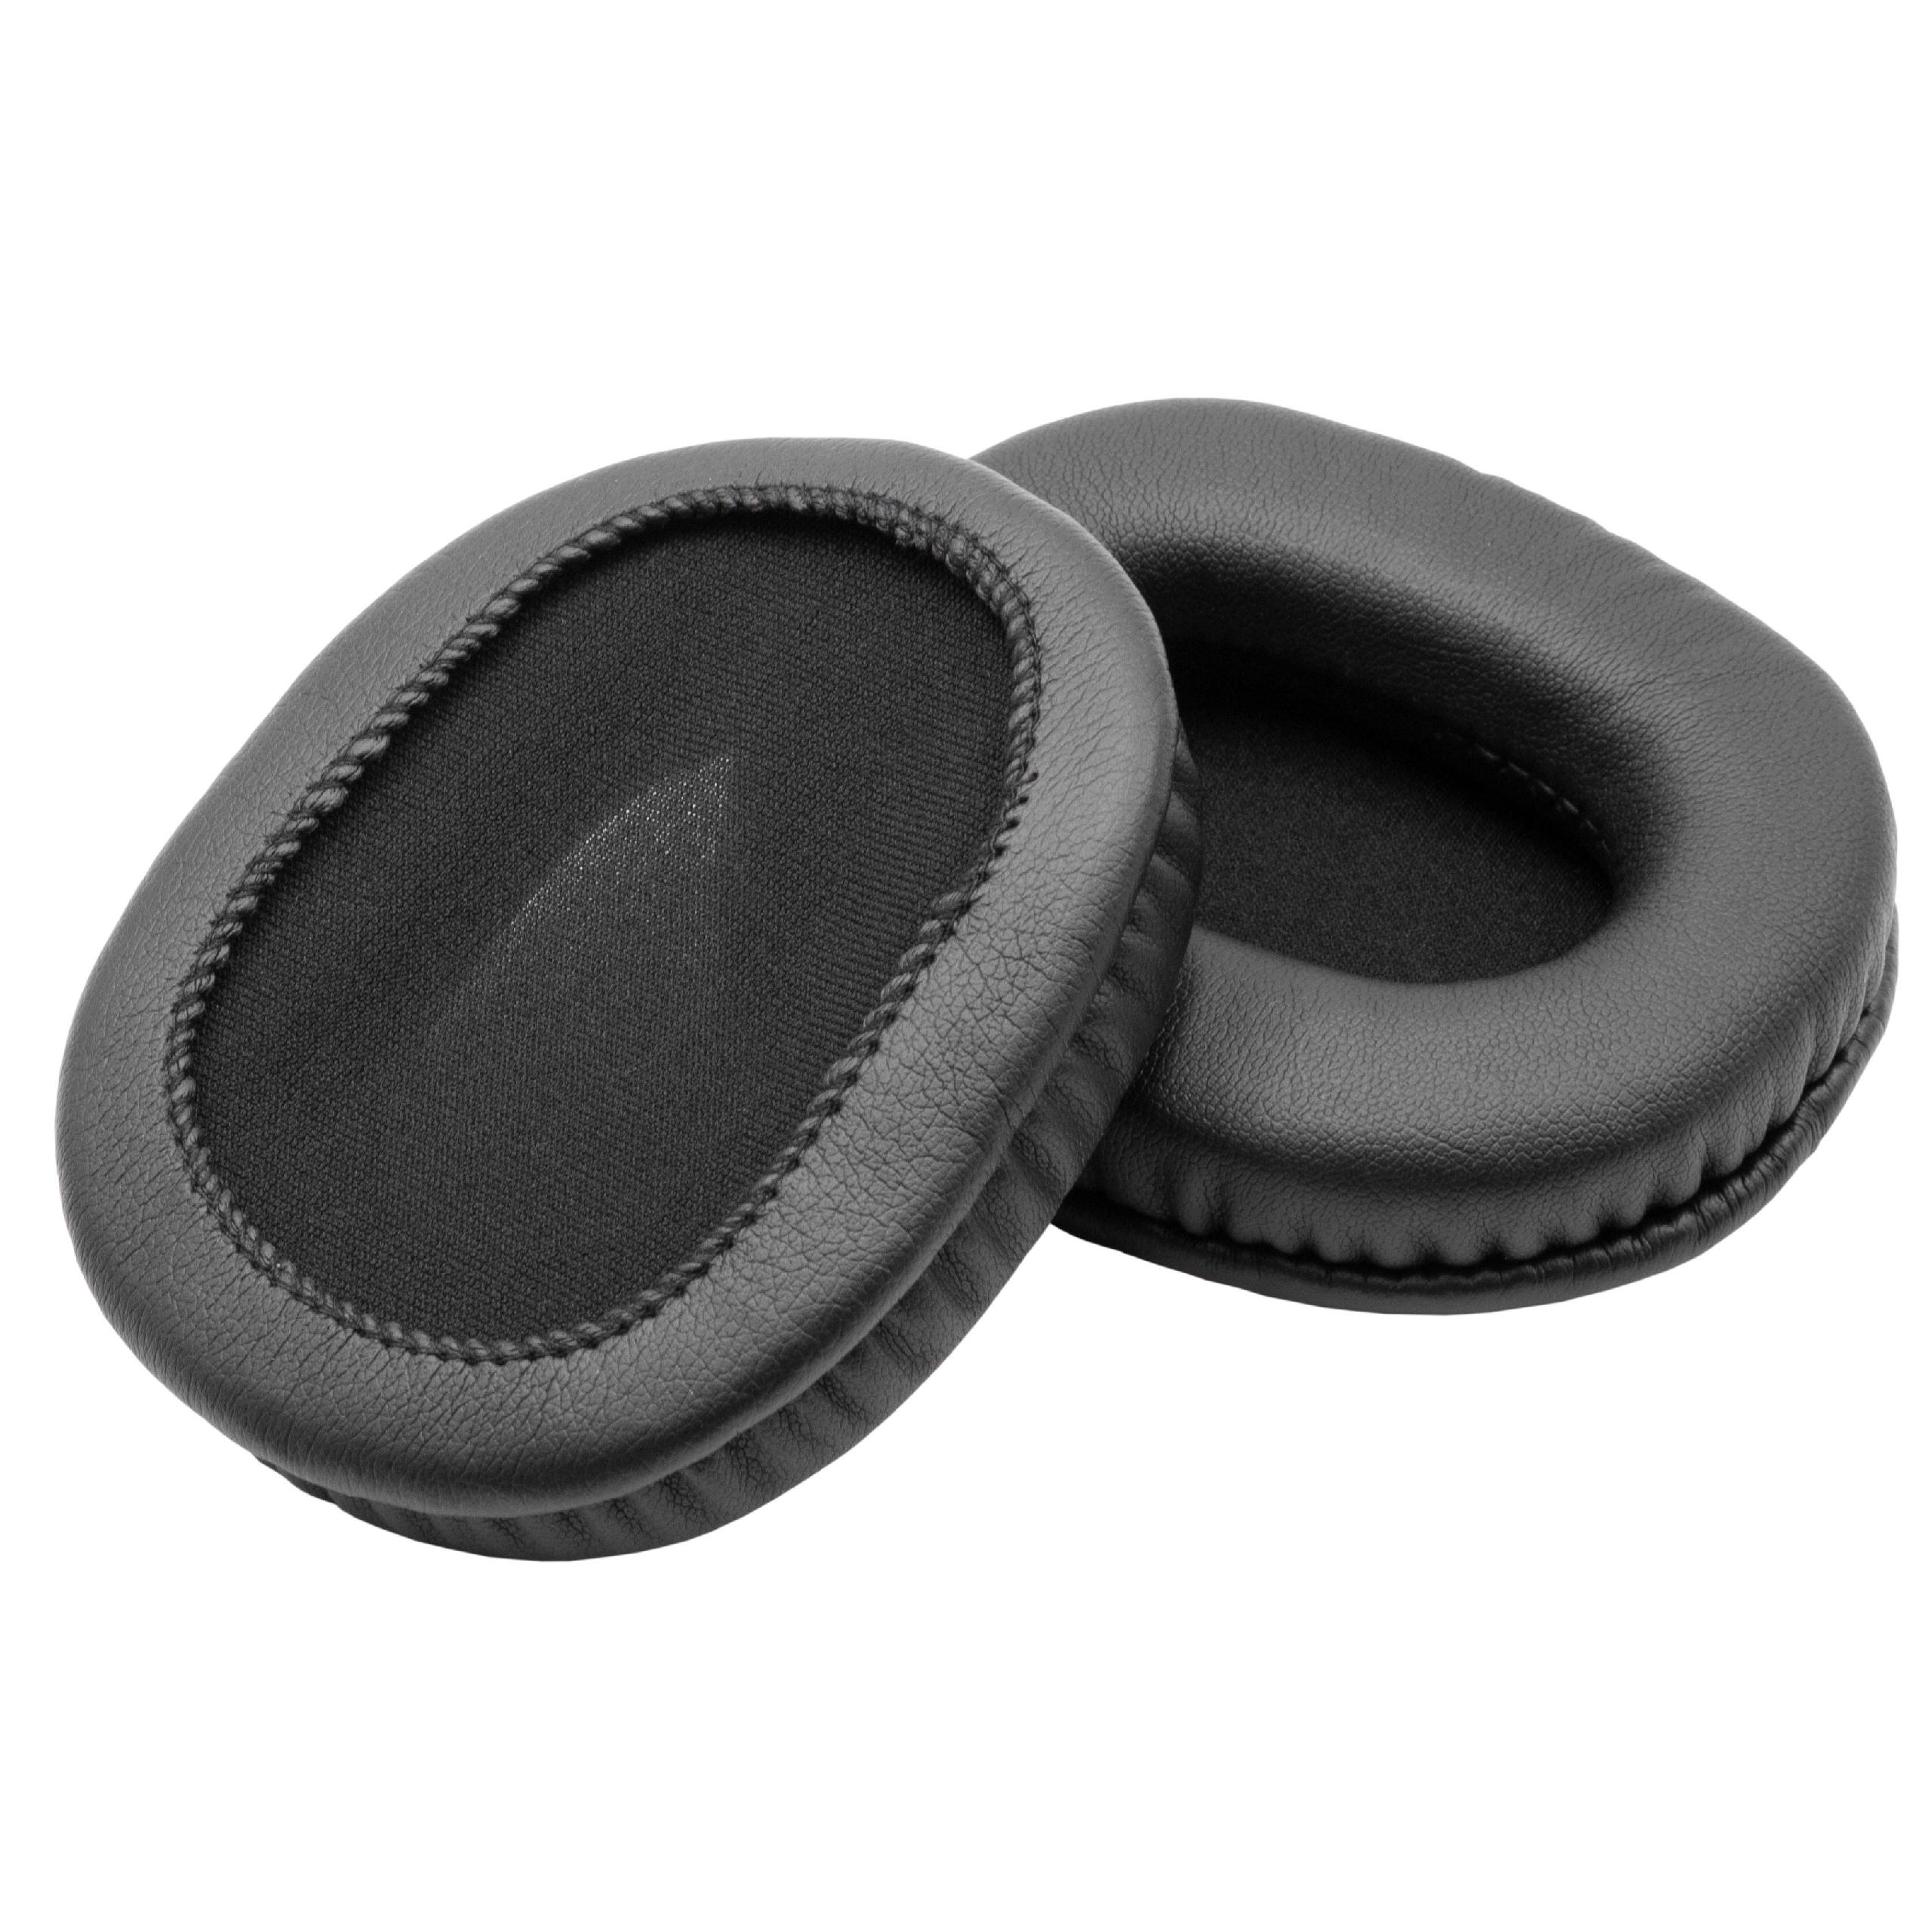 1 paio di cuscinetti per Audio Technica ATH-M20 cuffie ecc. - poliuretano / gommapiuma, 9,5 x 7,4 cm, 11 mm sp